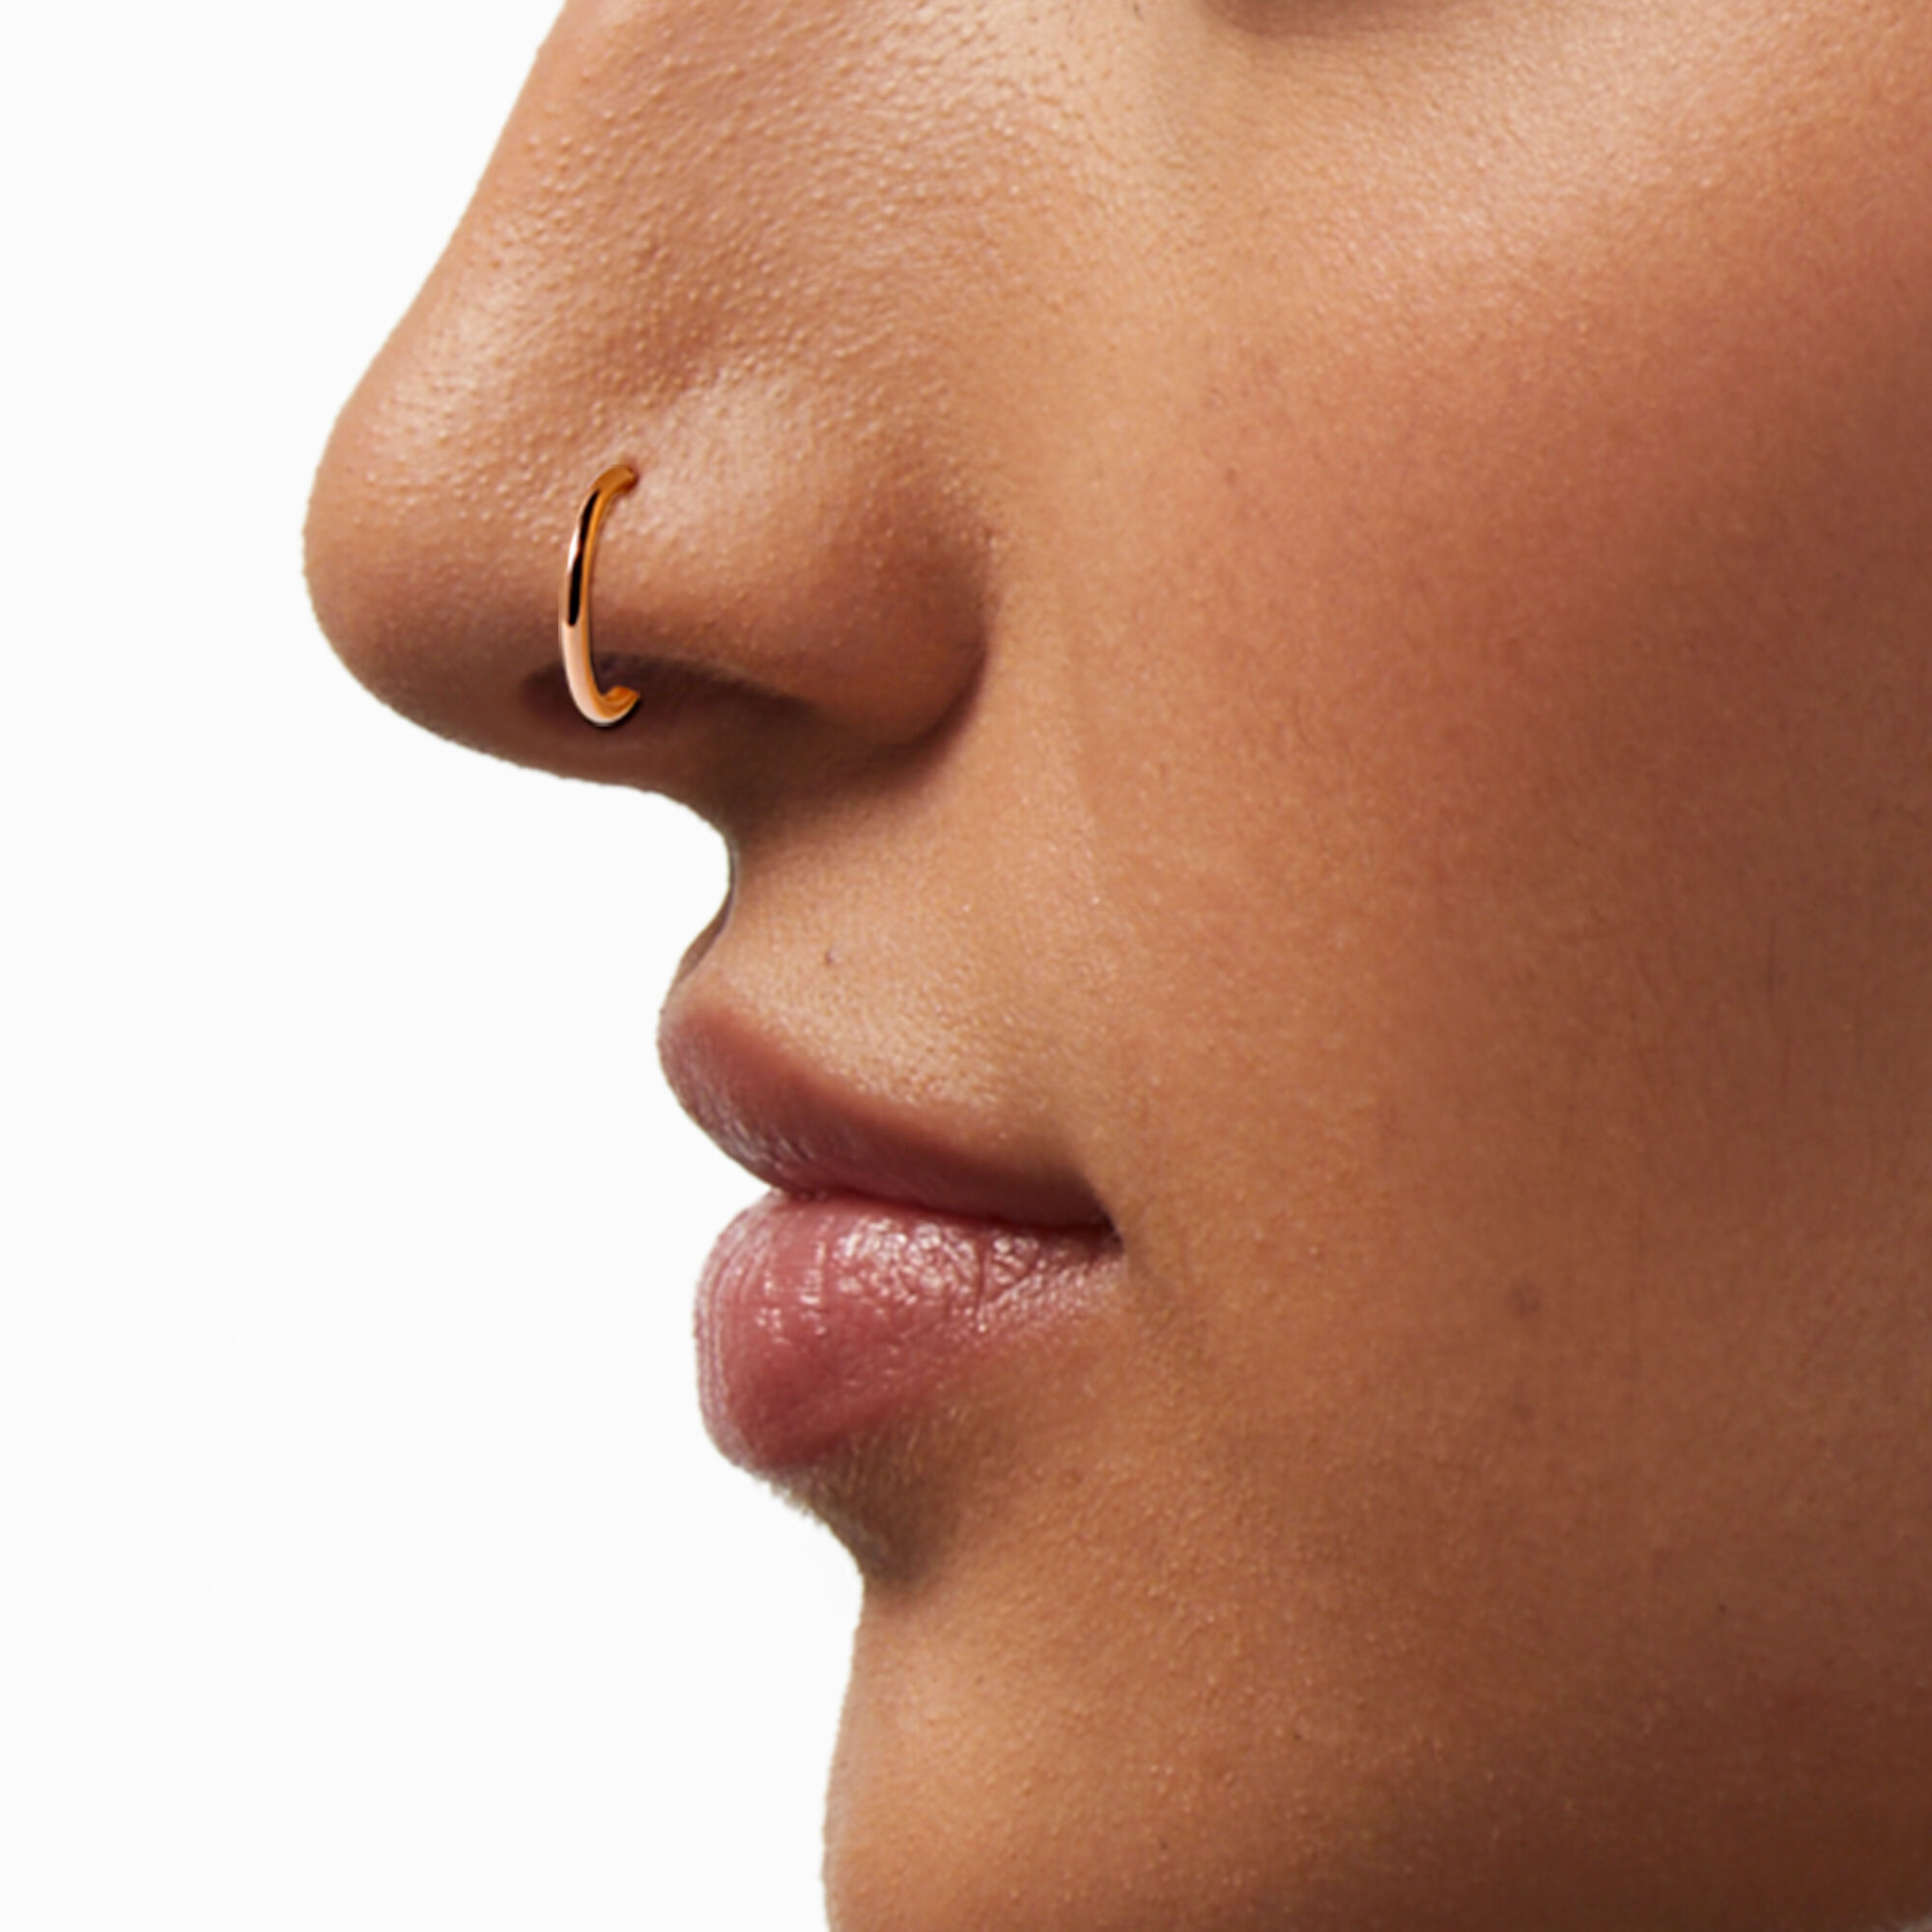 Buy Rose Gold Nose Ring, 14 Karat Hoop, Thin Nose Ring, Snug Nose Ring,  Tiny Nose Ring, 14 Karat Rose Gold Online in India - Etsy